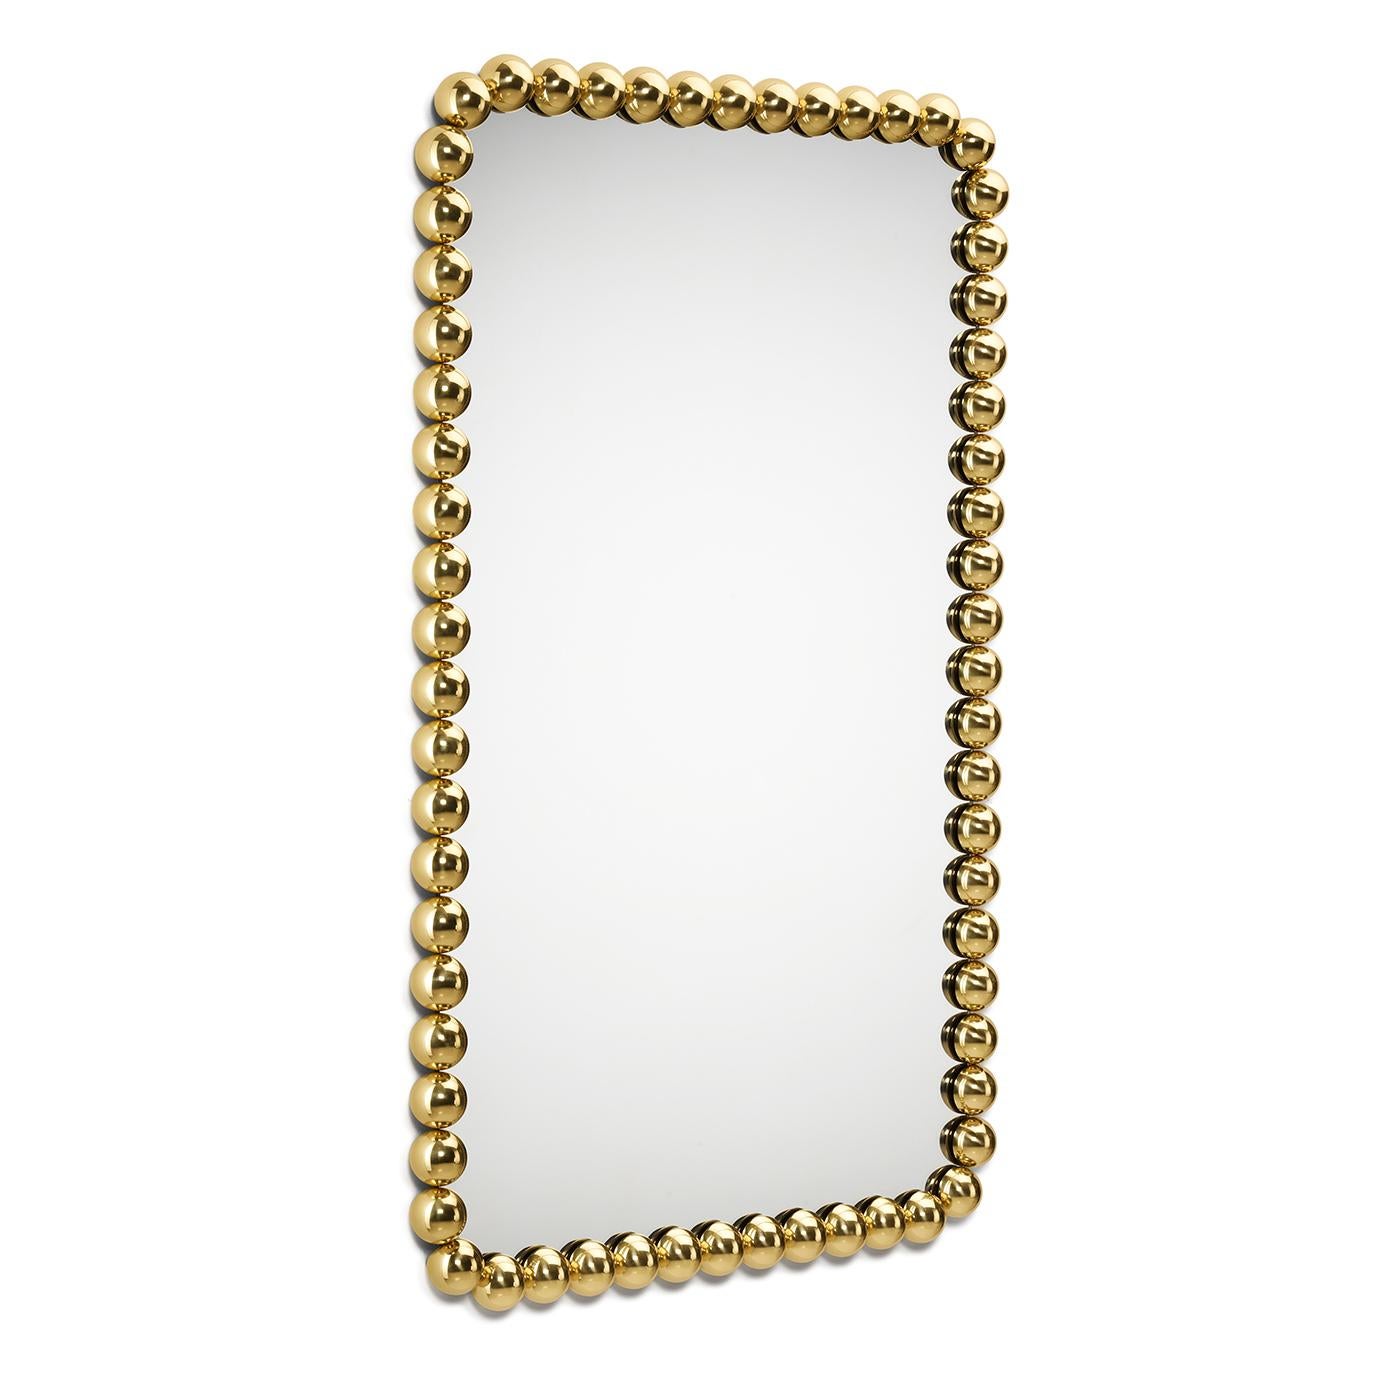 Dieser stilvolle Spiegel von Nika Zupanc, der über einem Waschbecken, einem Beistelltisch oder einem Waschtisch in modernen Luxuswohnungen angebracht wird, besticht durch seine unverwechselbare juwelenartige Ausstrahlung. Eine Reihe goldfarbener